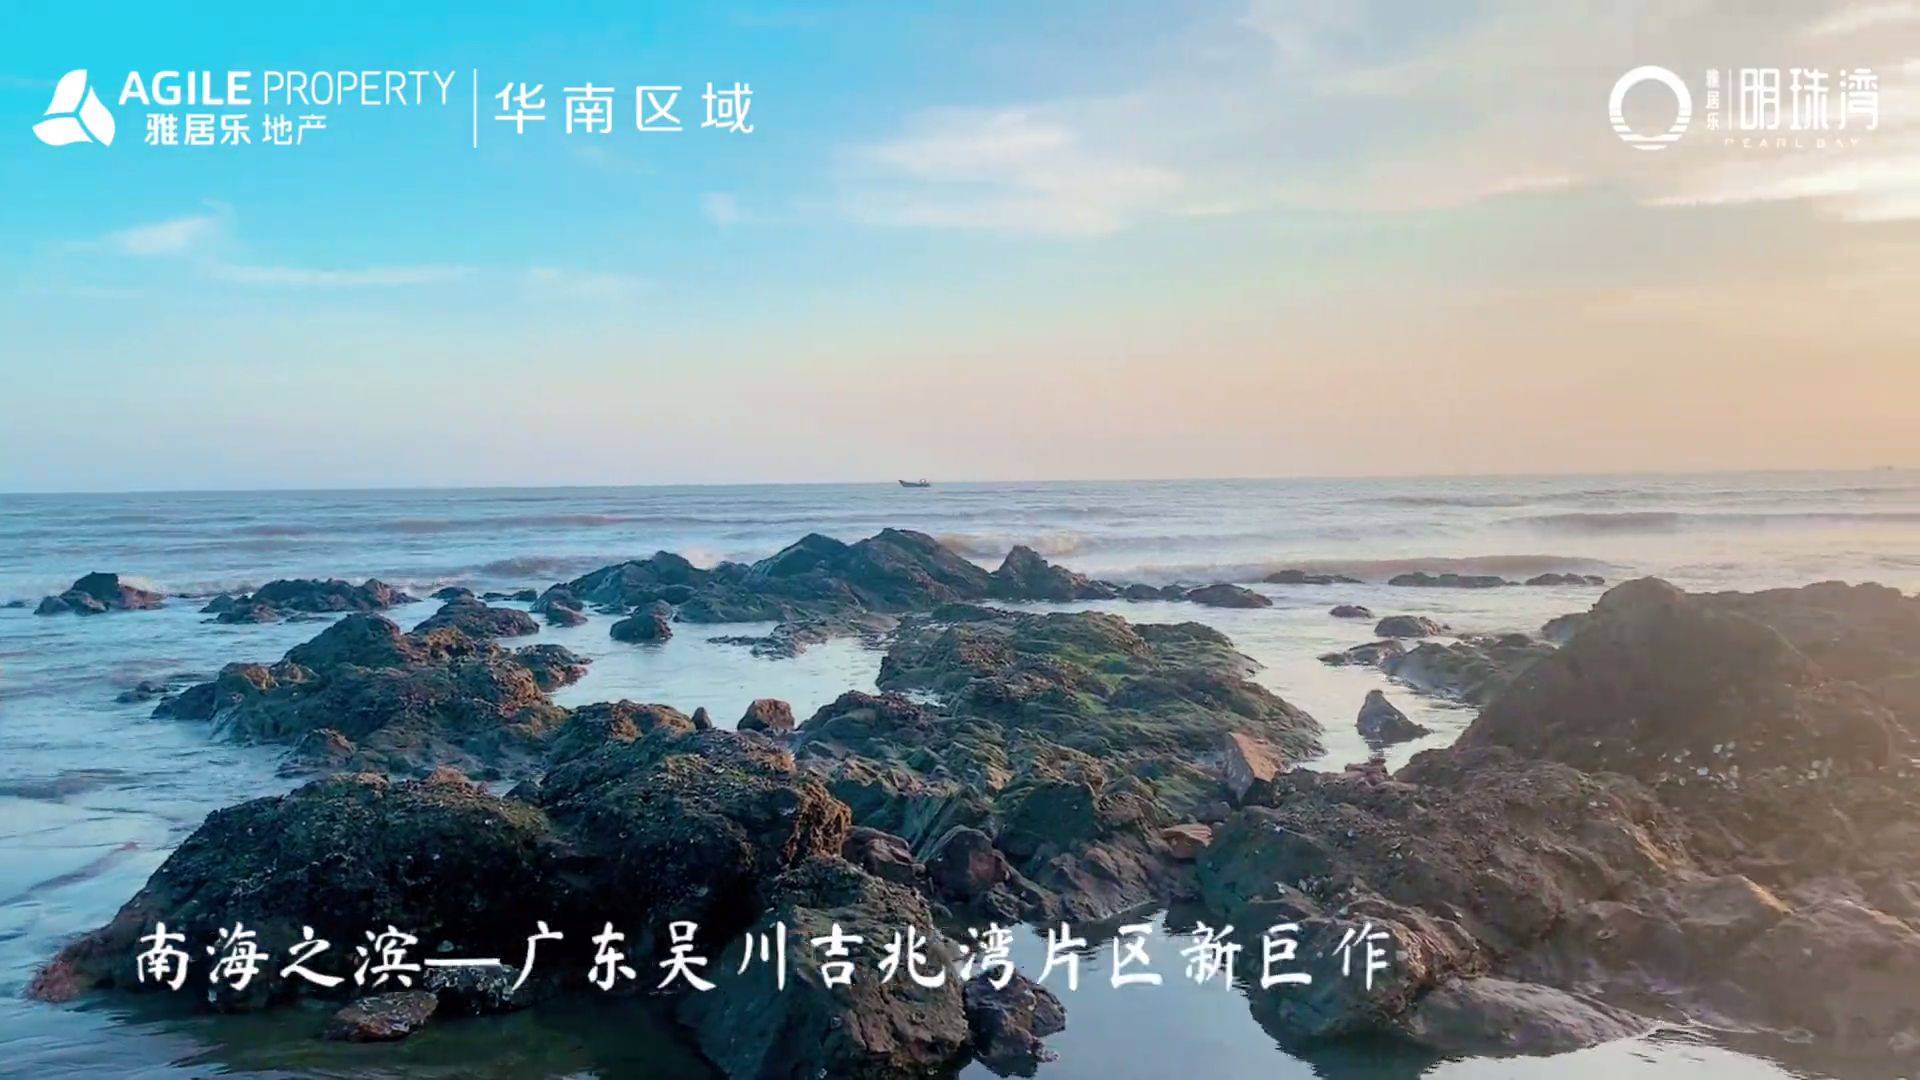 湛江雅居乐·明珠湾海景旅游,滨海吴川近享一片海,度假谧境,实现惬意